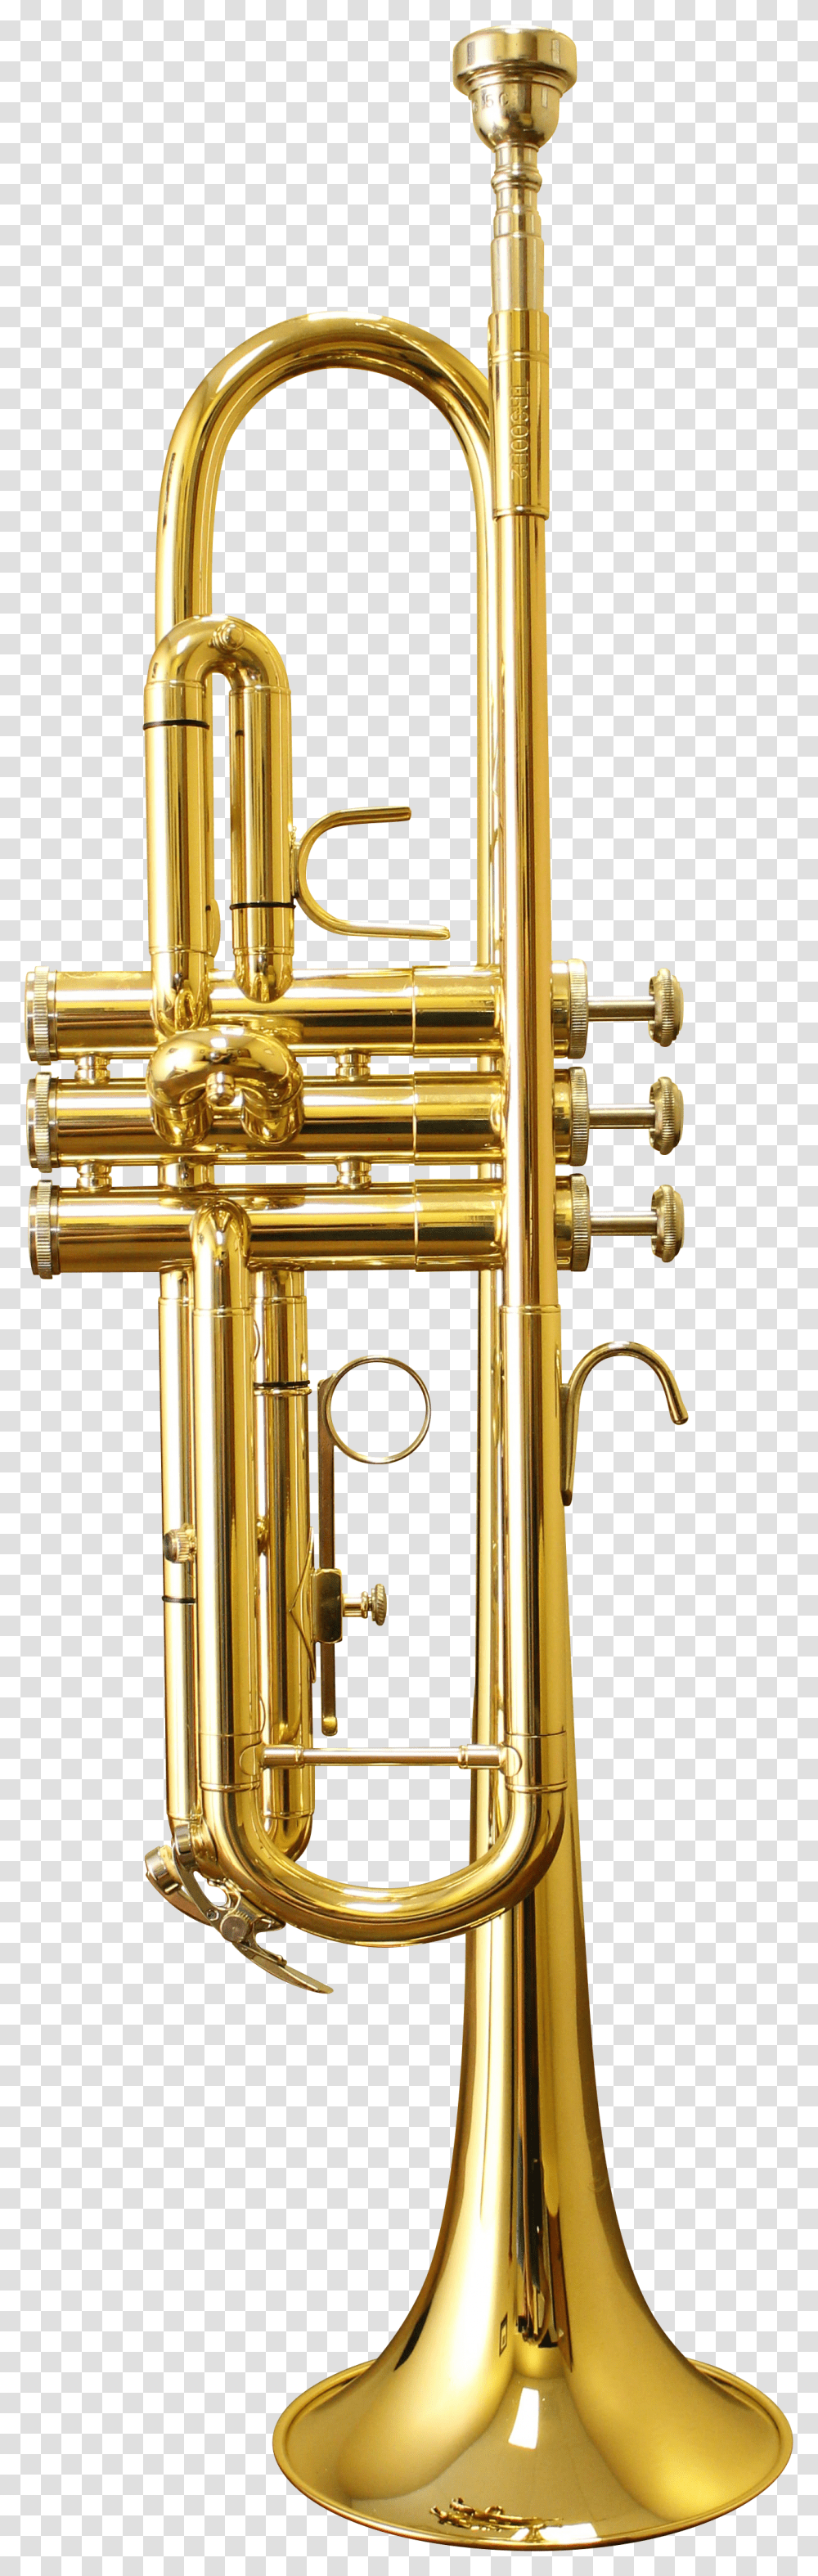 Trumpet, Flugelhorn, Brass Section, Musical Instrument, Cornet Transparent Png